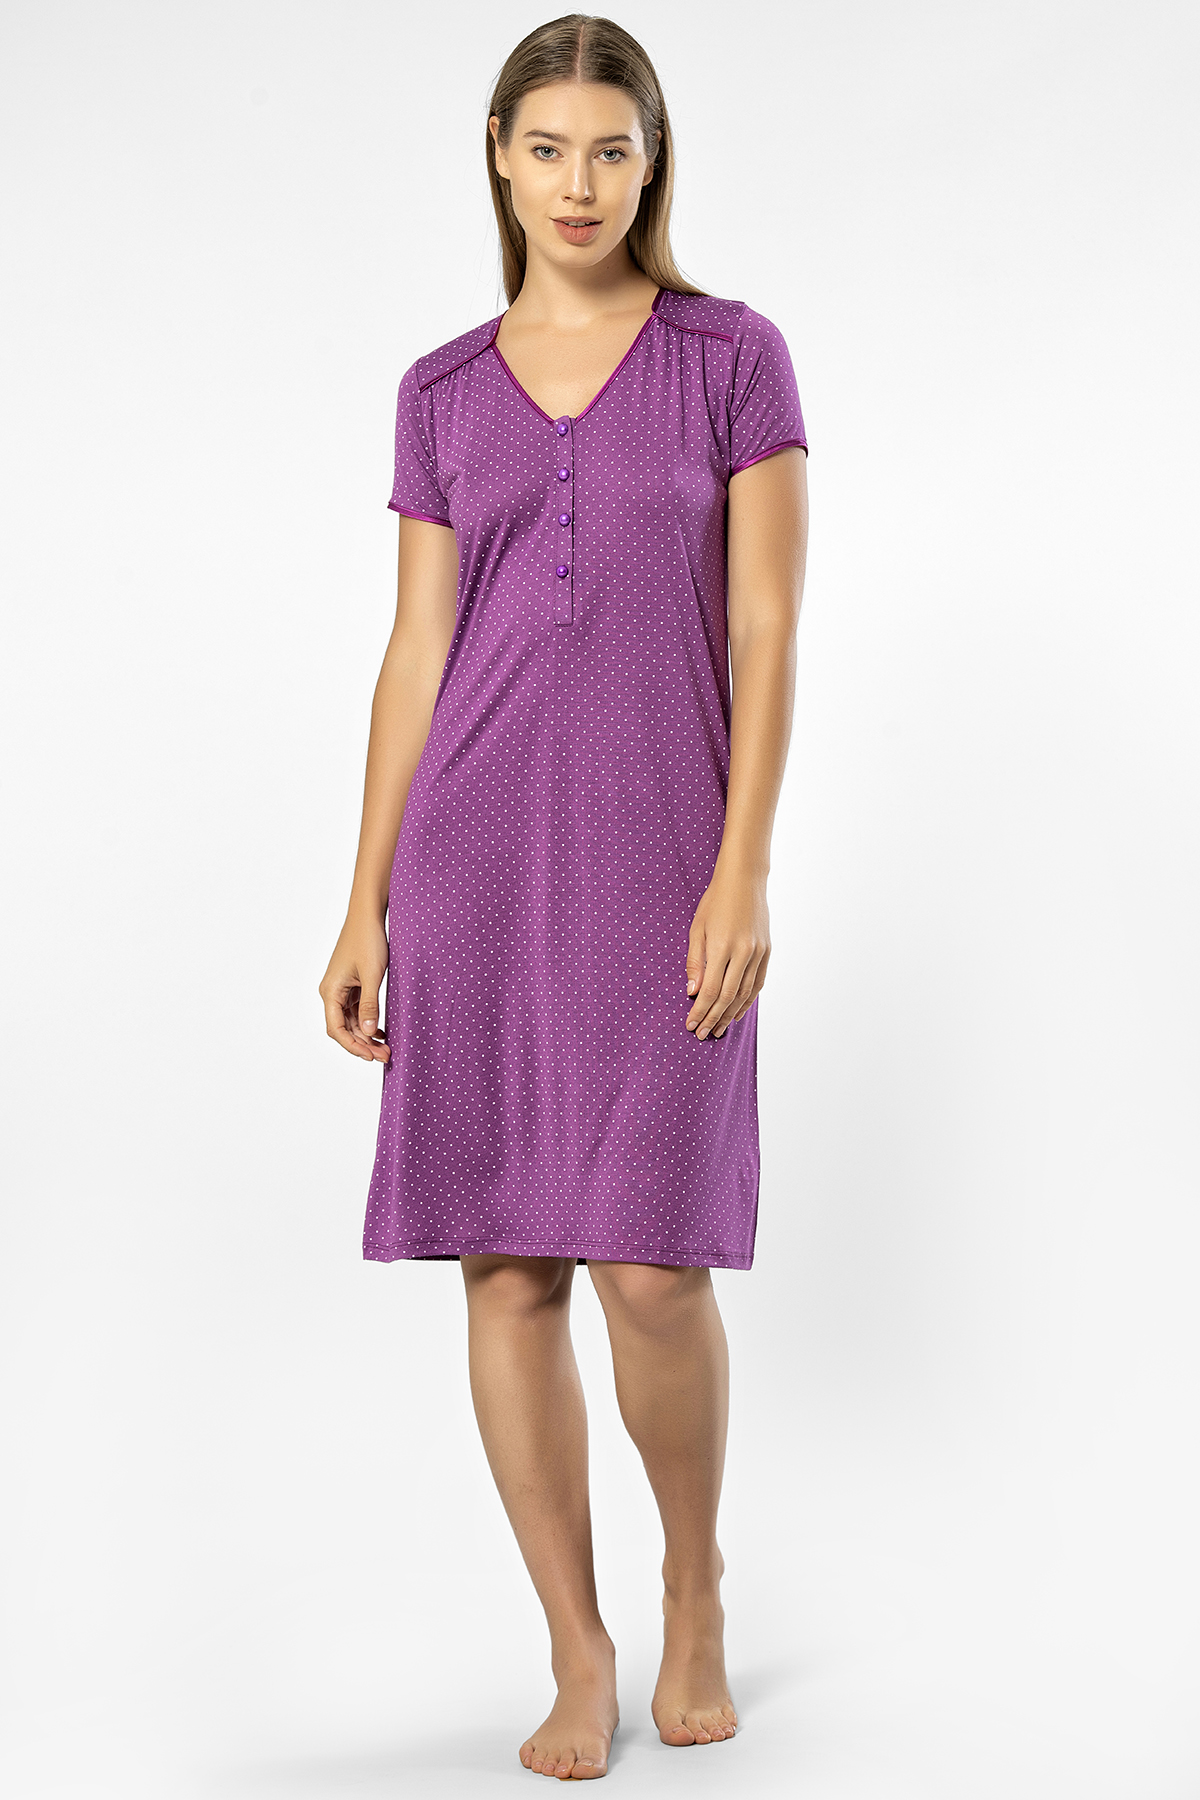 Ночная сорочка женская Turen 3293 фиолетовая S